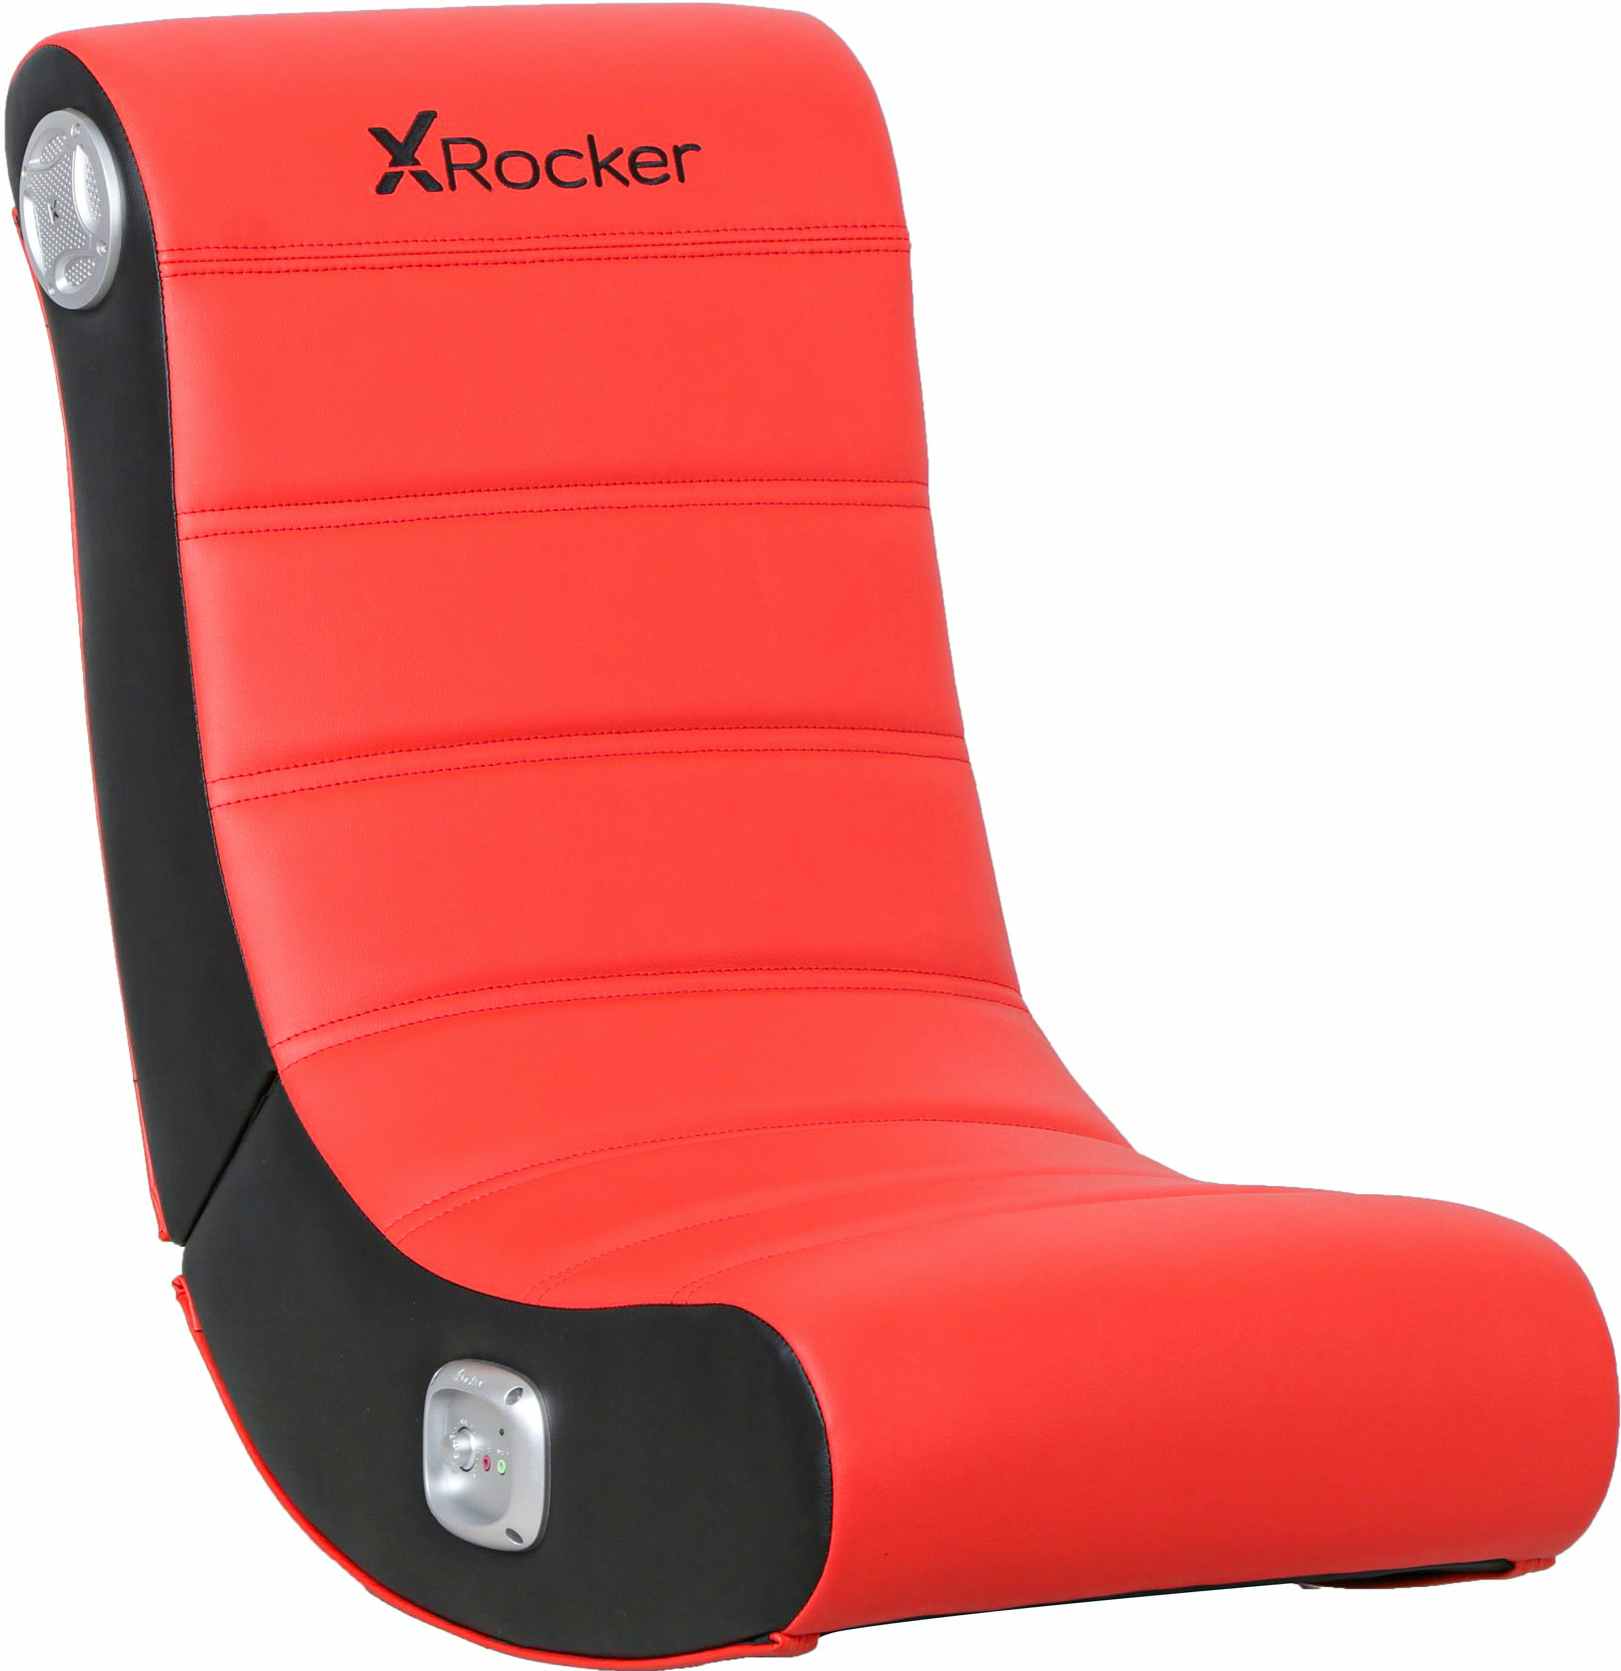 walmart-x-rocker-red-floor-gaming-chair-2022